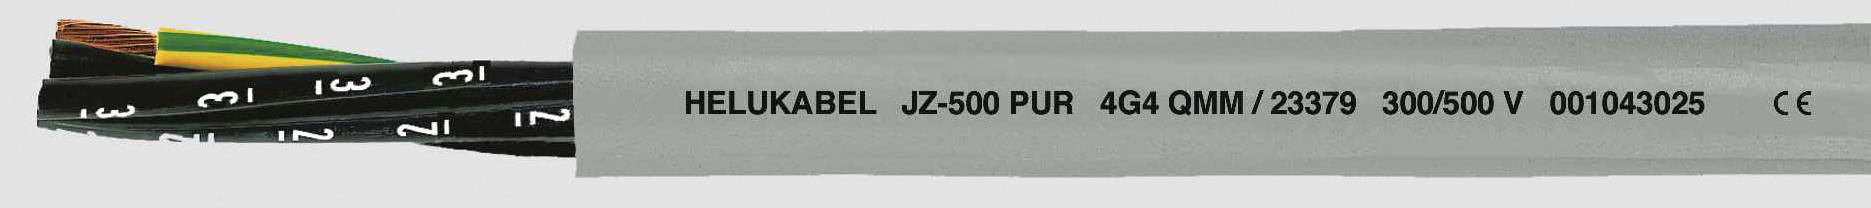 HELUKABEL JZ-500 PUR Steuerleitung 5 G 0.50 mm² Grau 23319-1000 1000 m